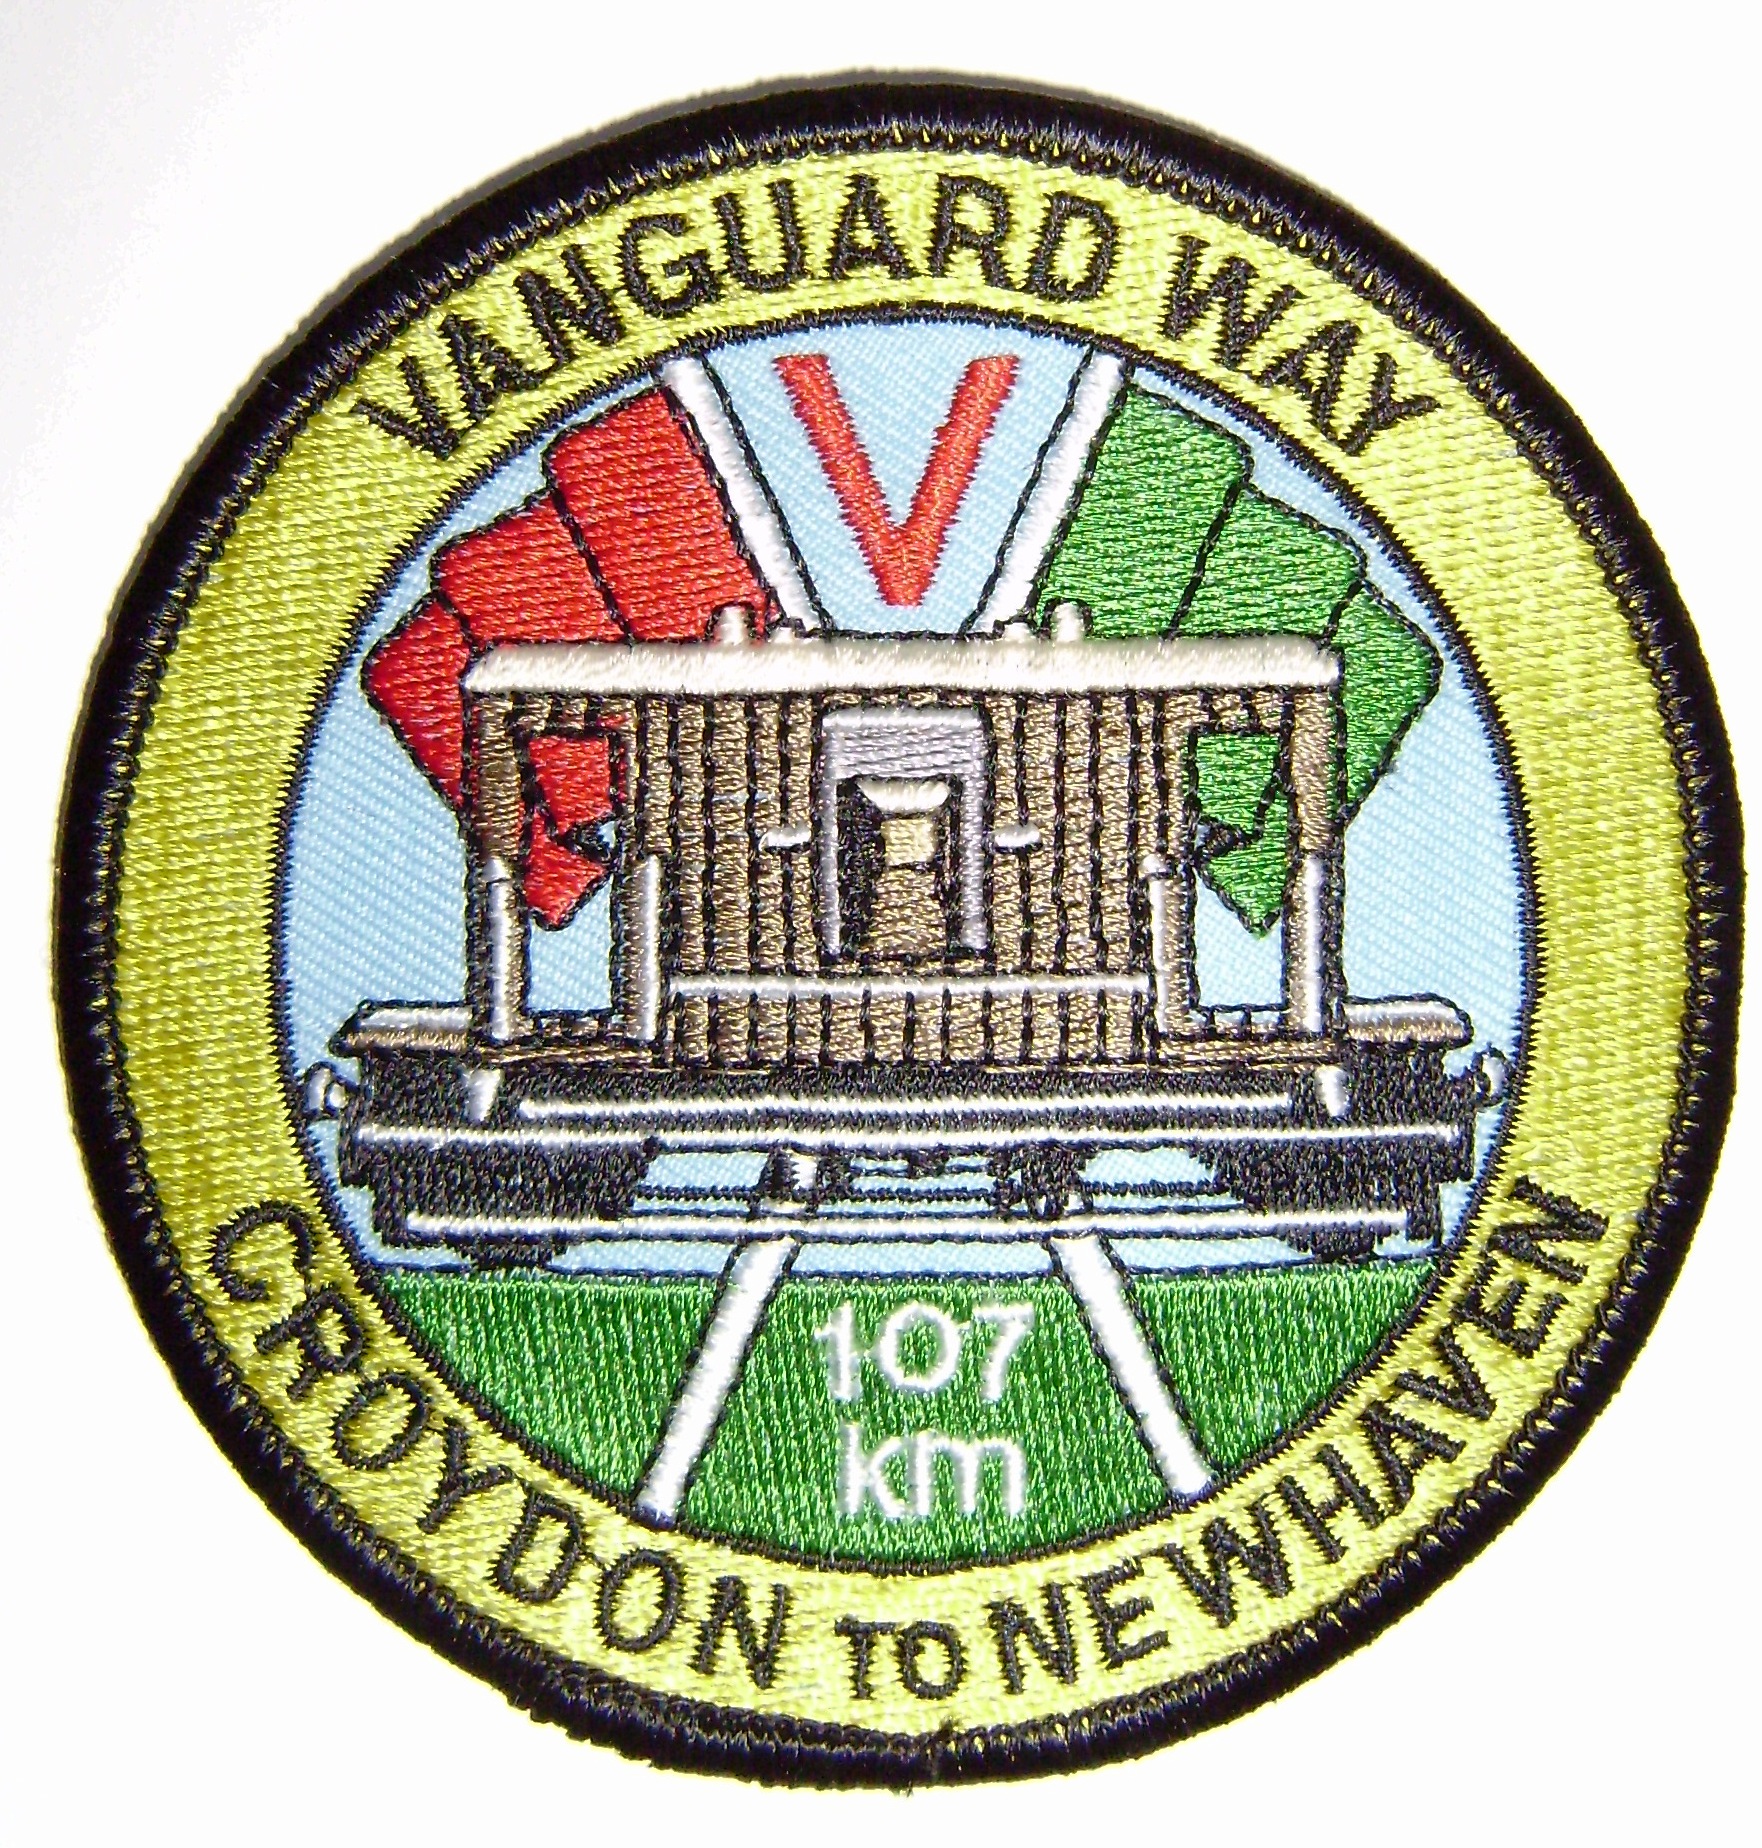 The Vanguard Way badge